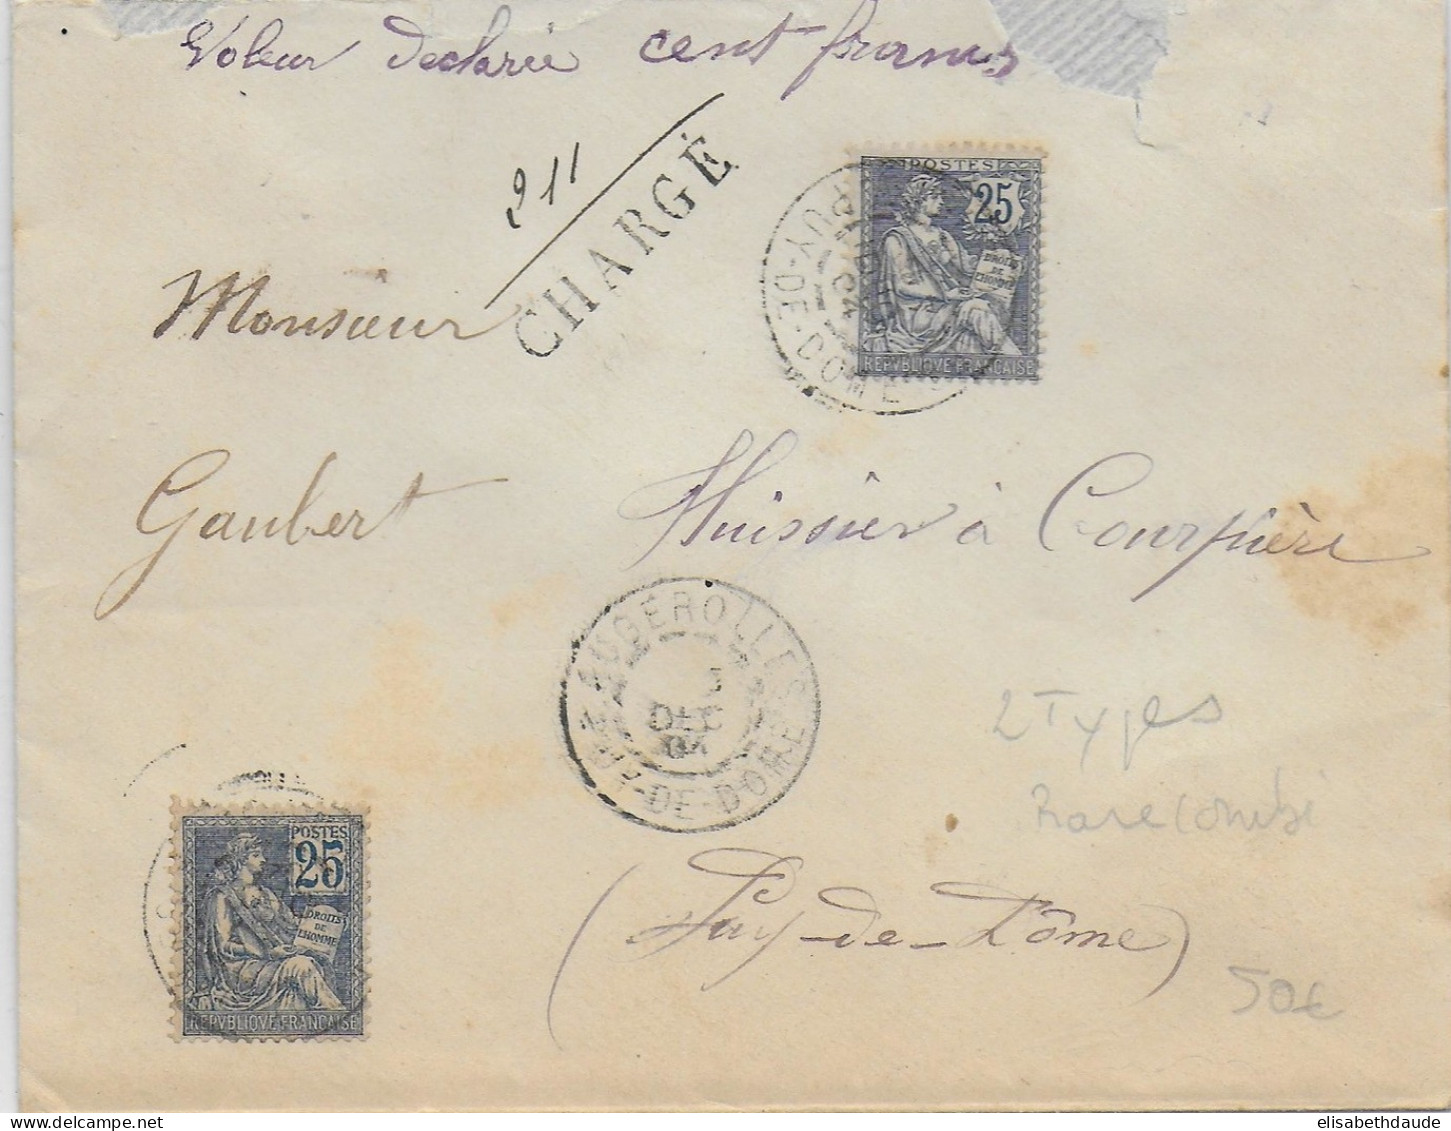 1904 - TYPES MOUCHON DIFFERENTS (RARE) Sur LETTRE CHARGEE De AUGEROLLES (PUY DE DOME) - 1900-02 Mouchon